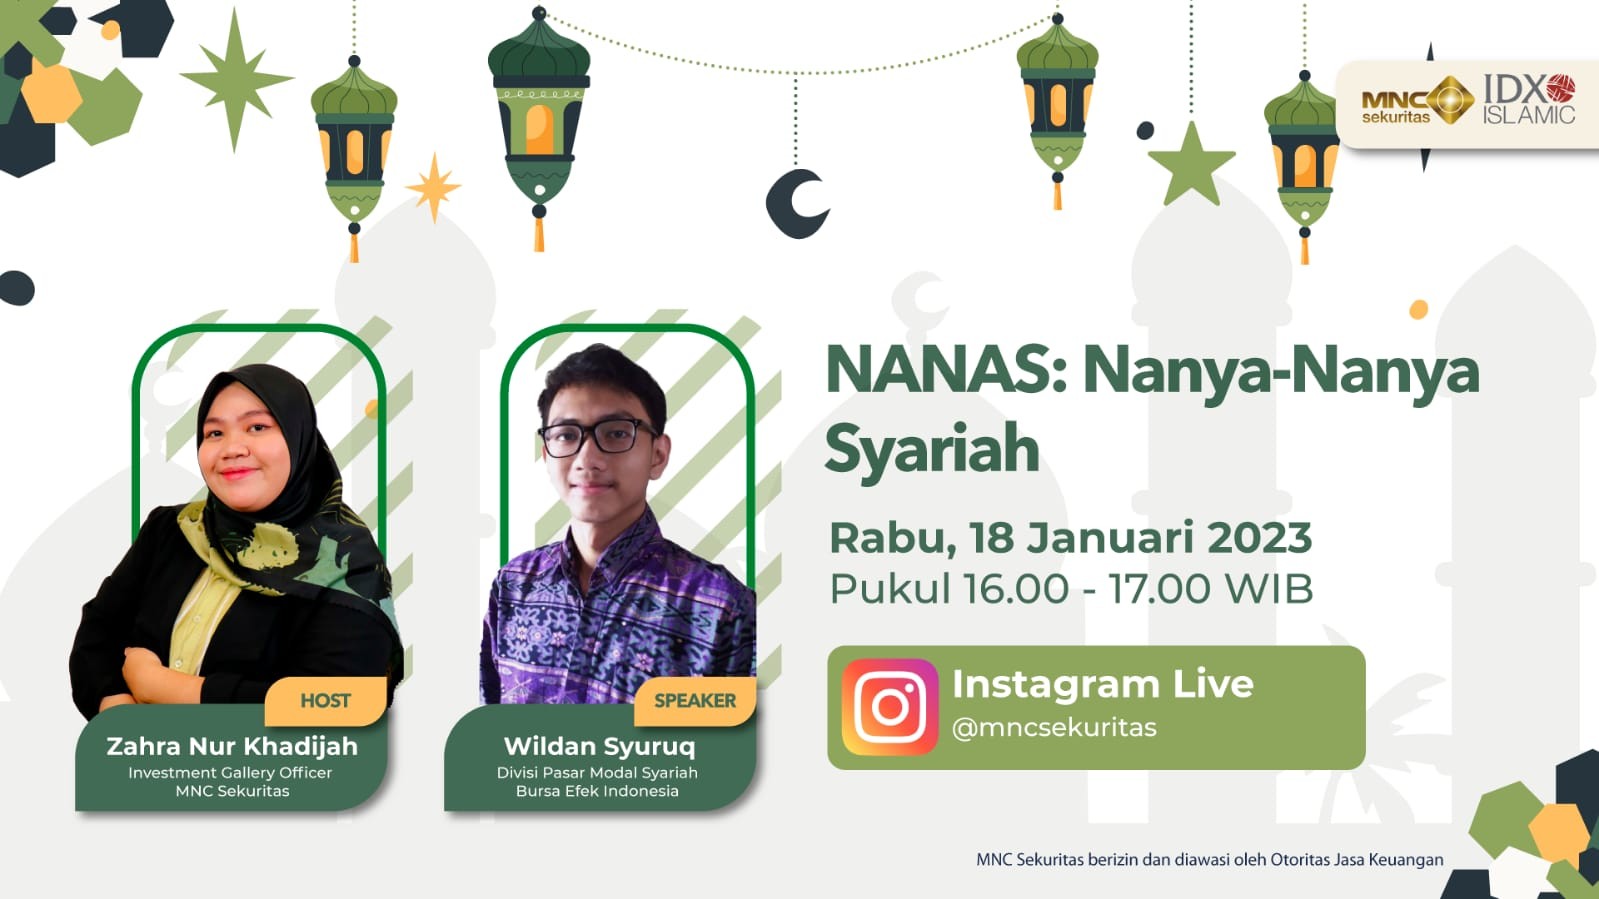 IG Live MNC Sekuritas Sore Ini: “NANAS: Nanya-Nanya Syariah” (FOTO: MNC Media)